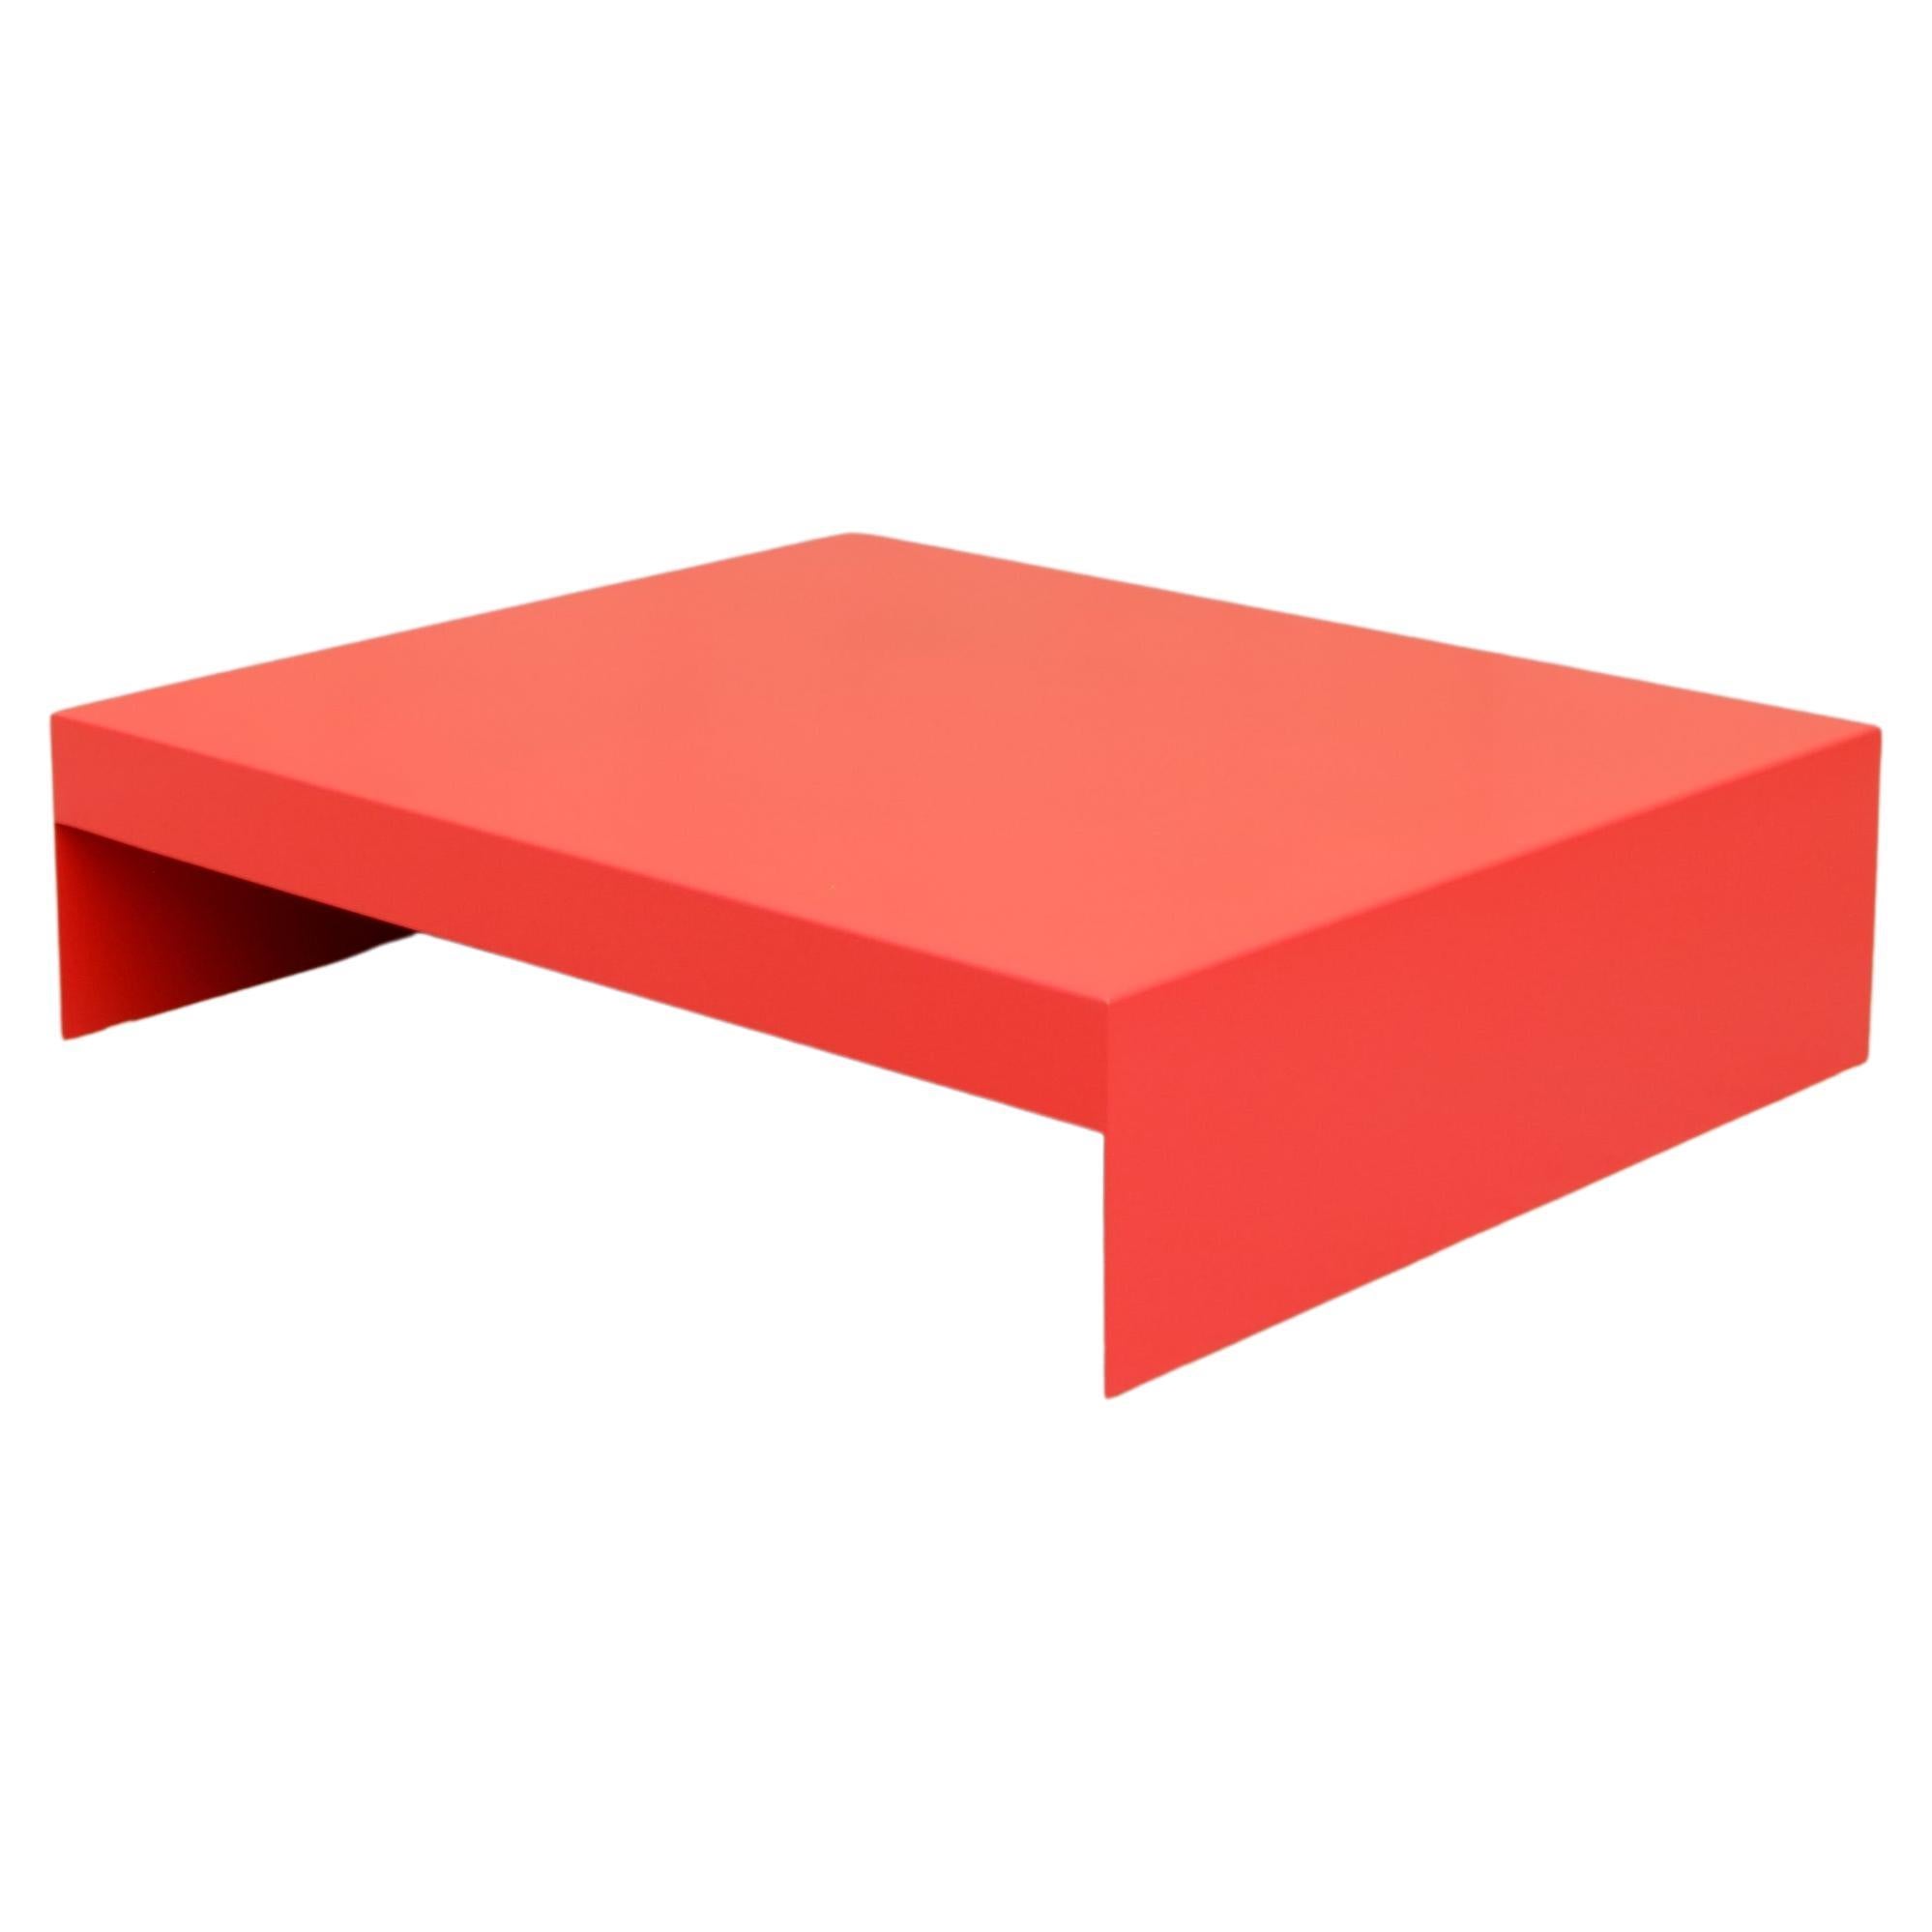 Großer rechteckiger roter Couchtisch in Einzelform aus Aluminium – anpassbar